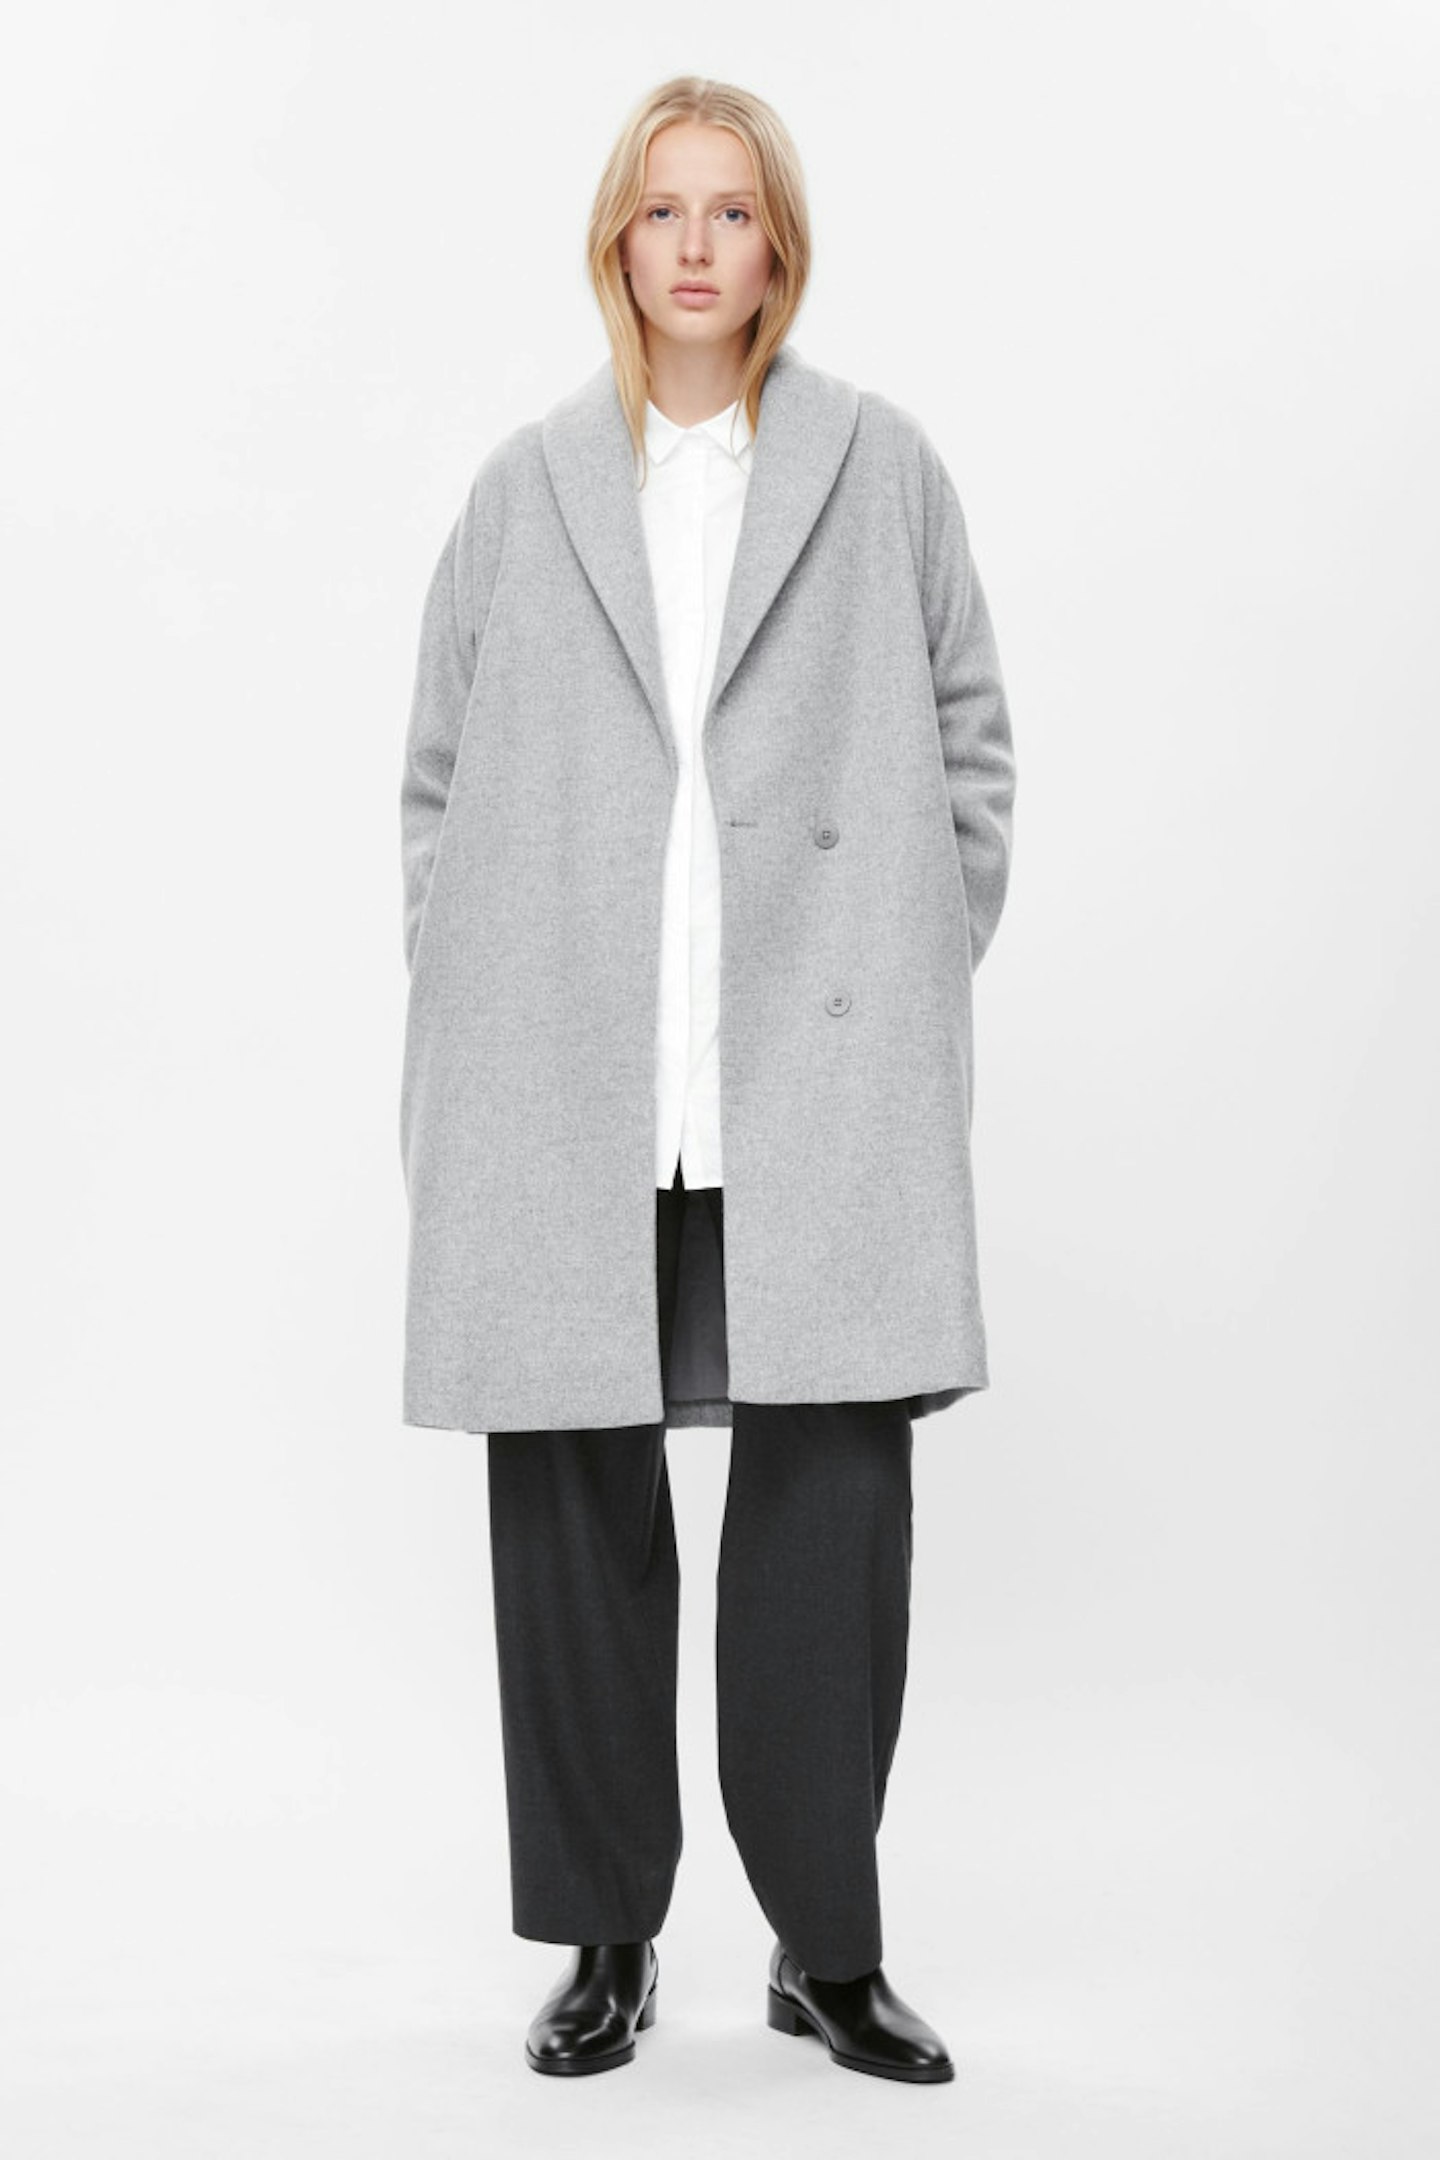 Cos Cool Grey Coat, £175.00